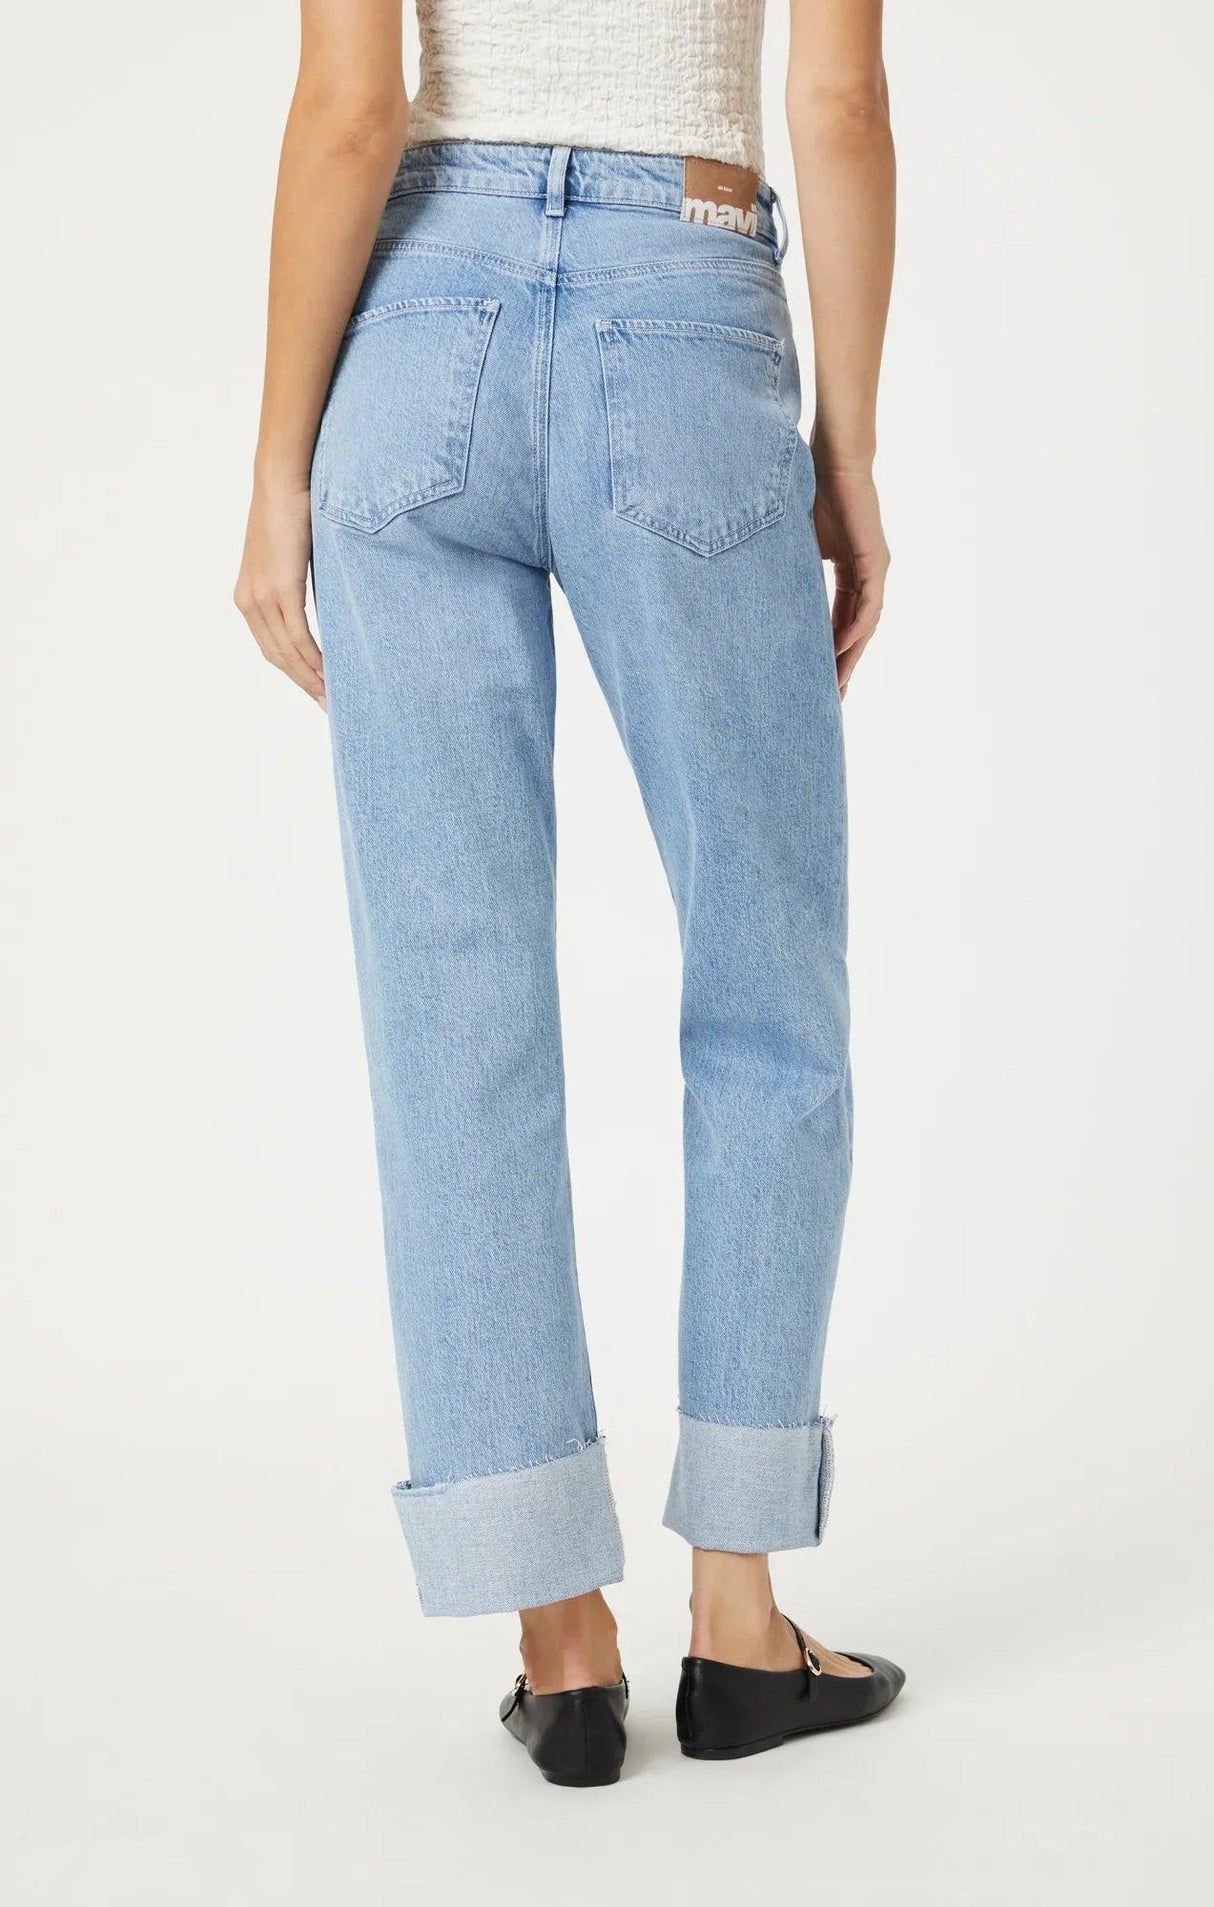 Mavi Women's Savannah Cuffed Jeans - A&M Clothing & Shoes